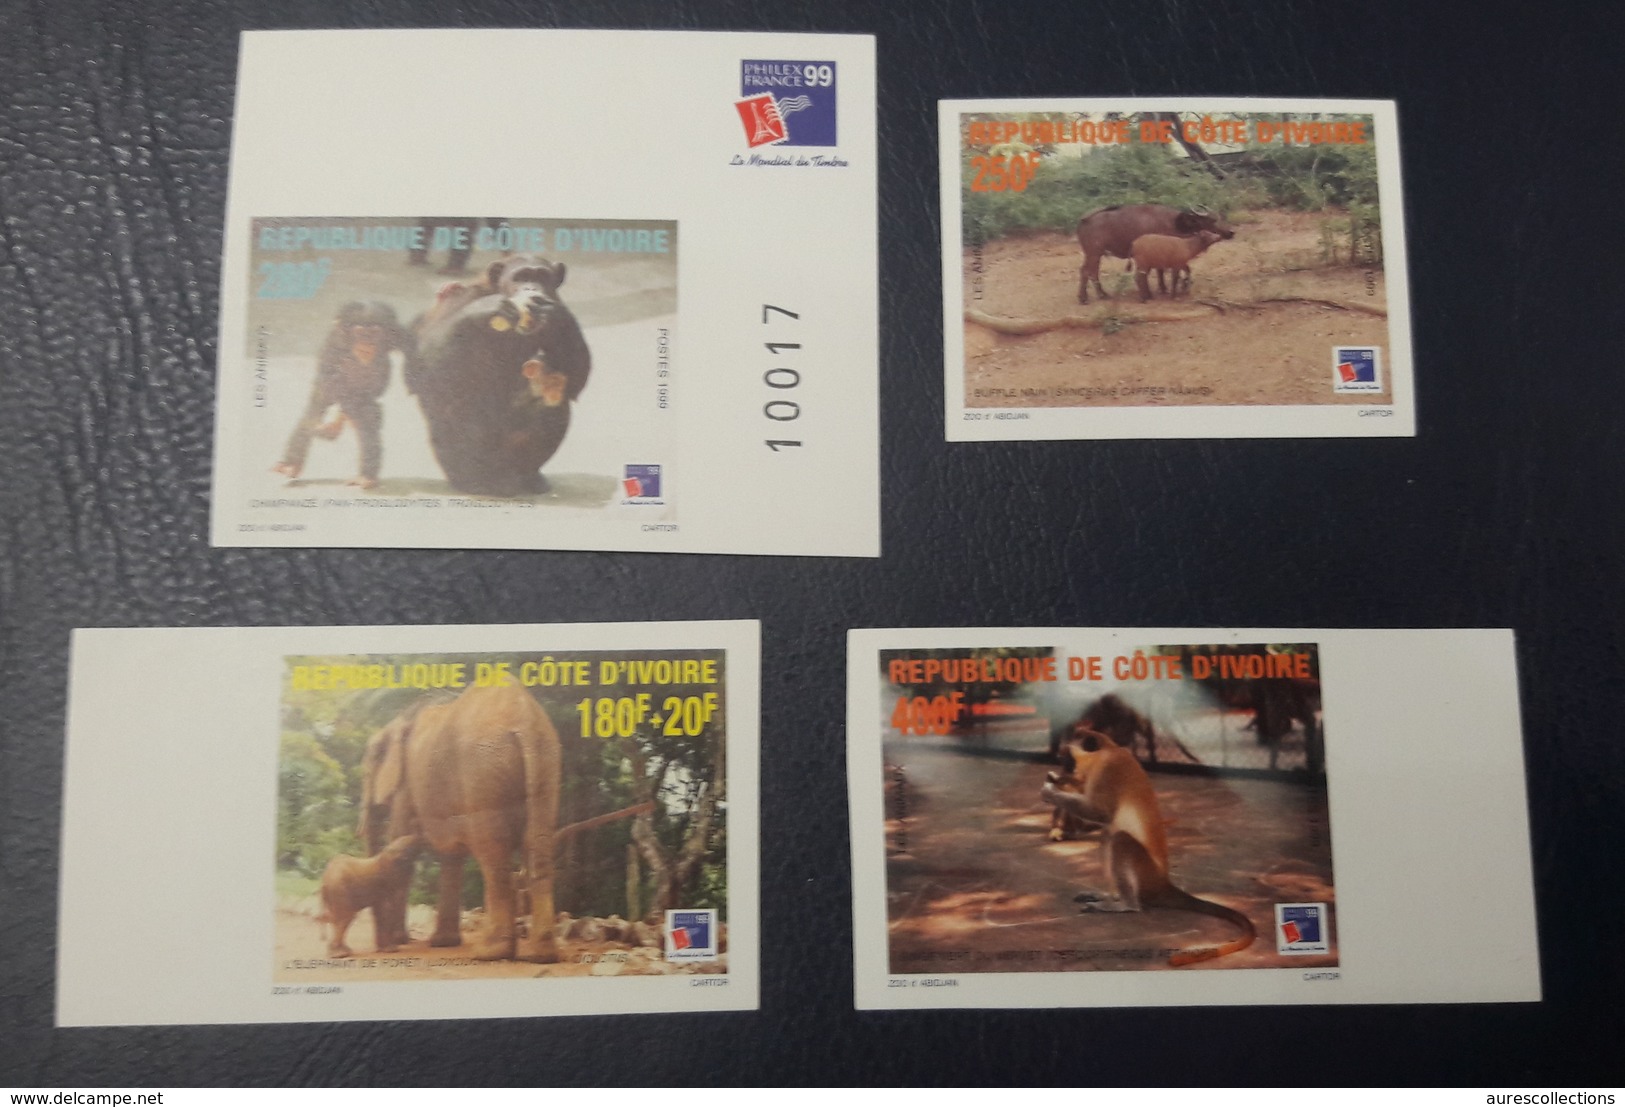 COTE D'IVOIRE IVORY COAST 1999 - IMPERF NON DENTELE ND - ANIMALS APES MONKEYS SINGES ELEPHANTS PHILEXAFRIQUE CHIMPANZE - Chimpanzés